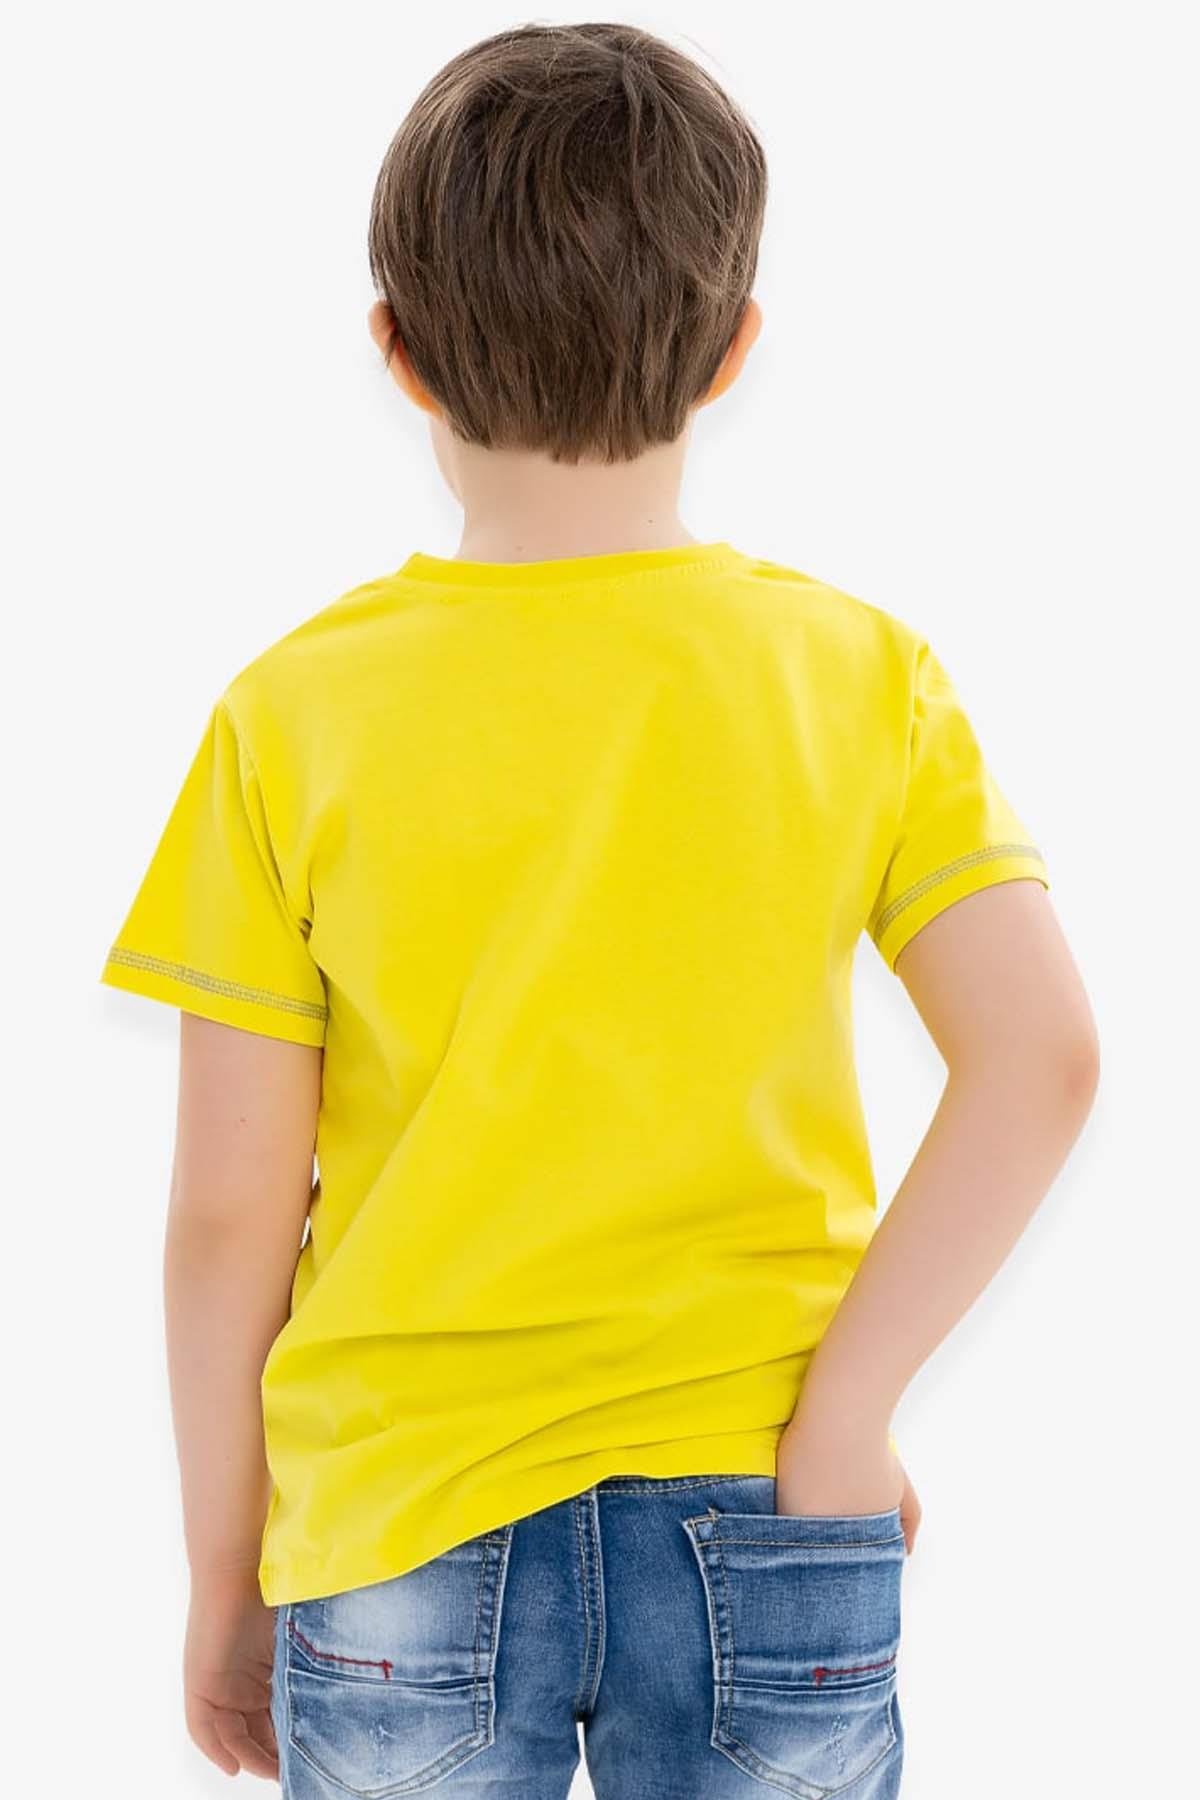 Erkek Çocuk Tişört Oyun Temalı Sarı 6-12 Yaş - Yazlık Tişört Modelleri |  Breeze